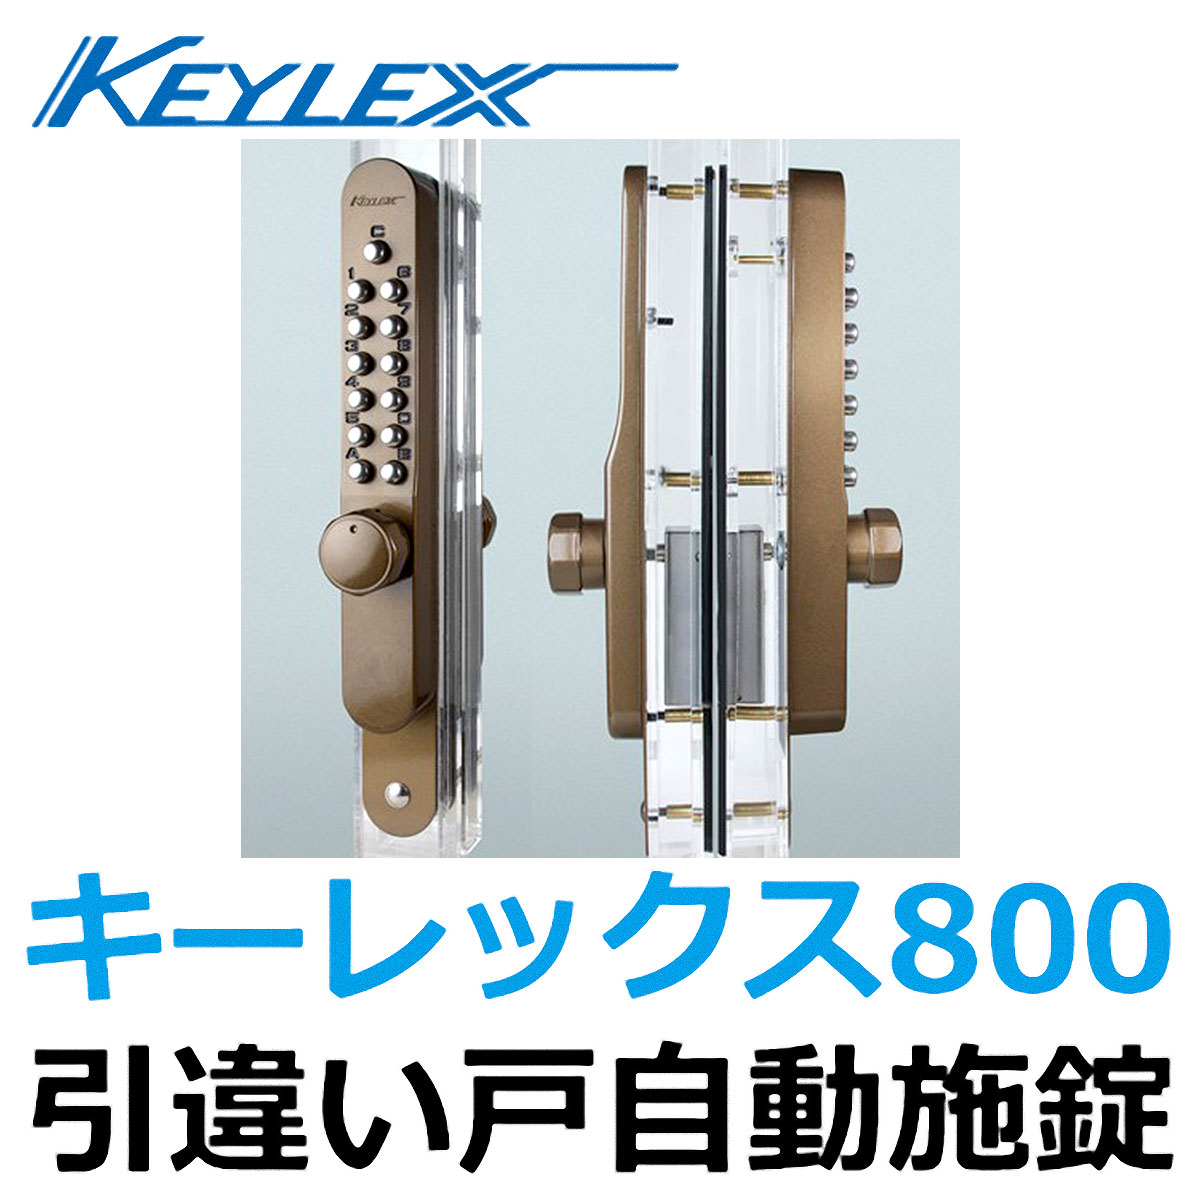 0円 激安通販販売 キーレックス800 K887TM 引違い戸自動施錠タイプ 鍵つき